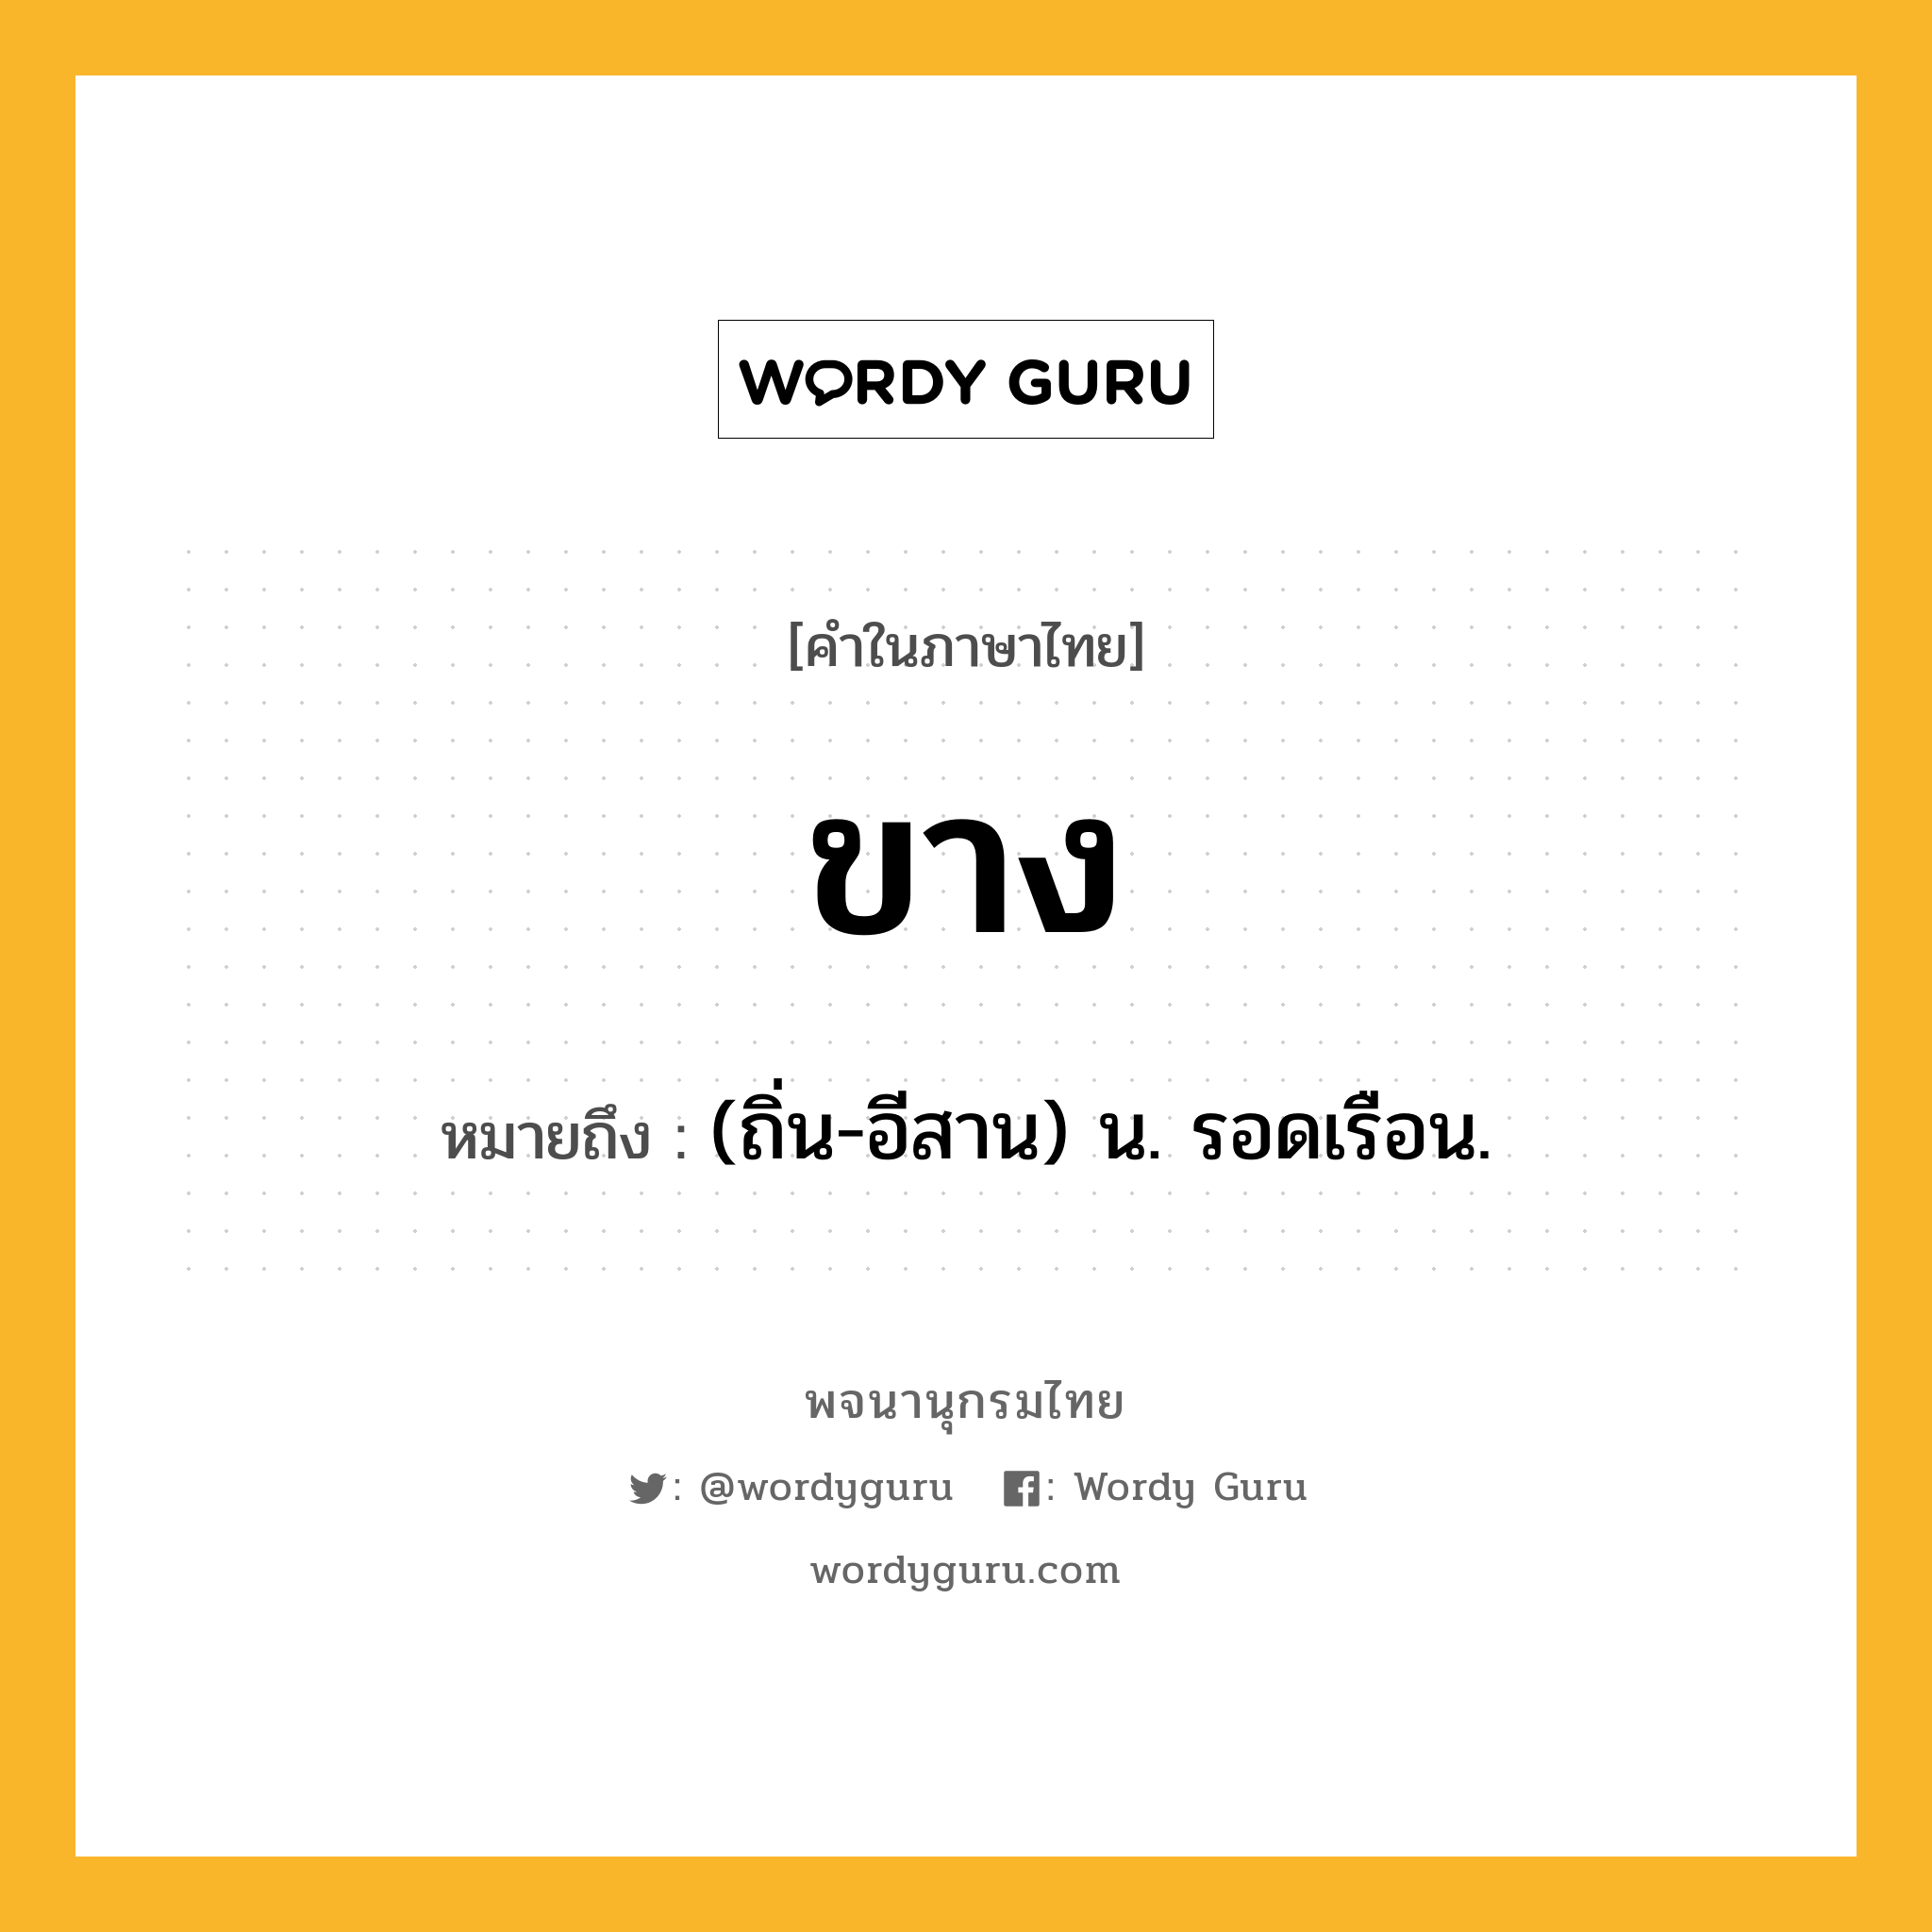 ขาง ความหมาย หมายถึงอะไร?, คำในภาษาไทย ขาง หมายถึง (ถิ่น-อีสาน) น. รอดเรือน.